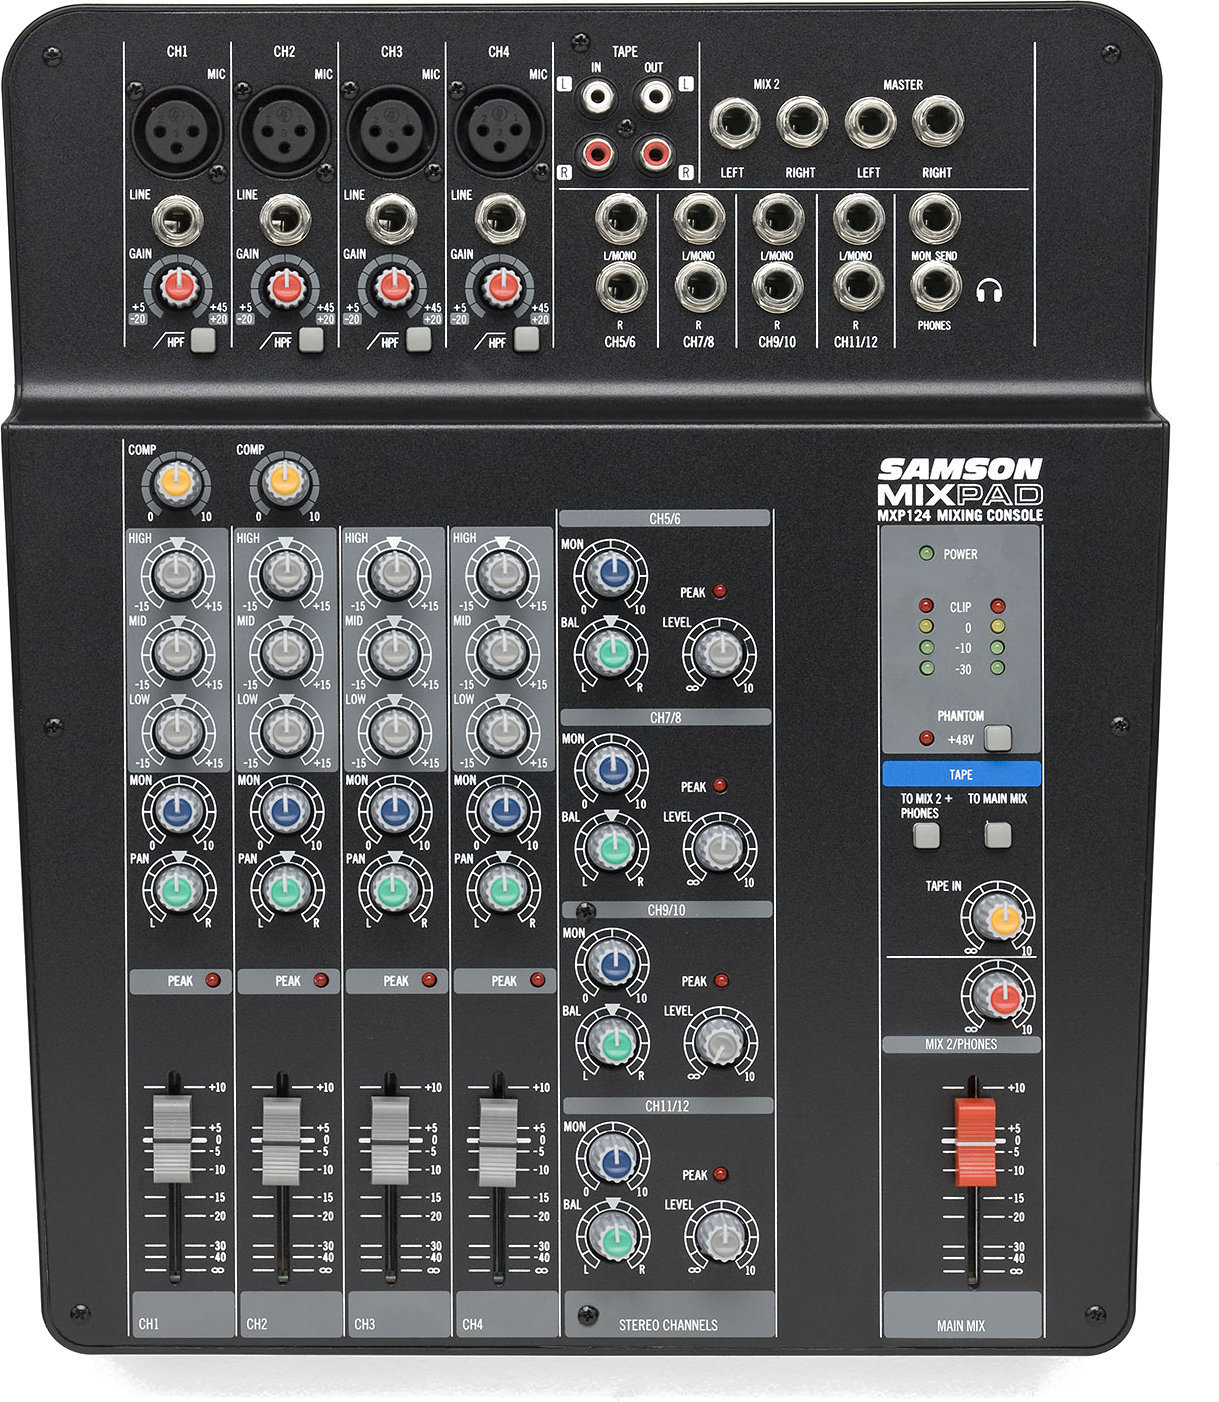 Mikser analogowy Samson MXP124 MixPad